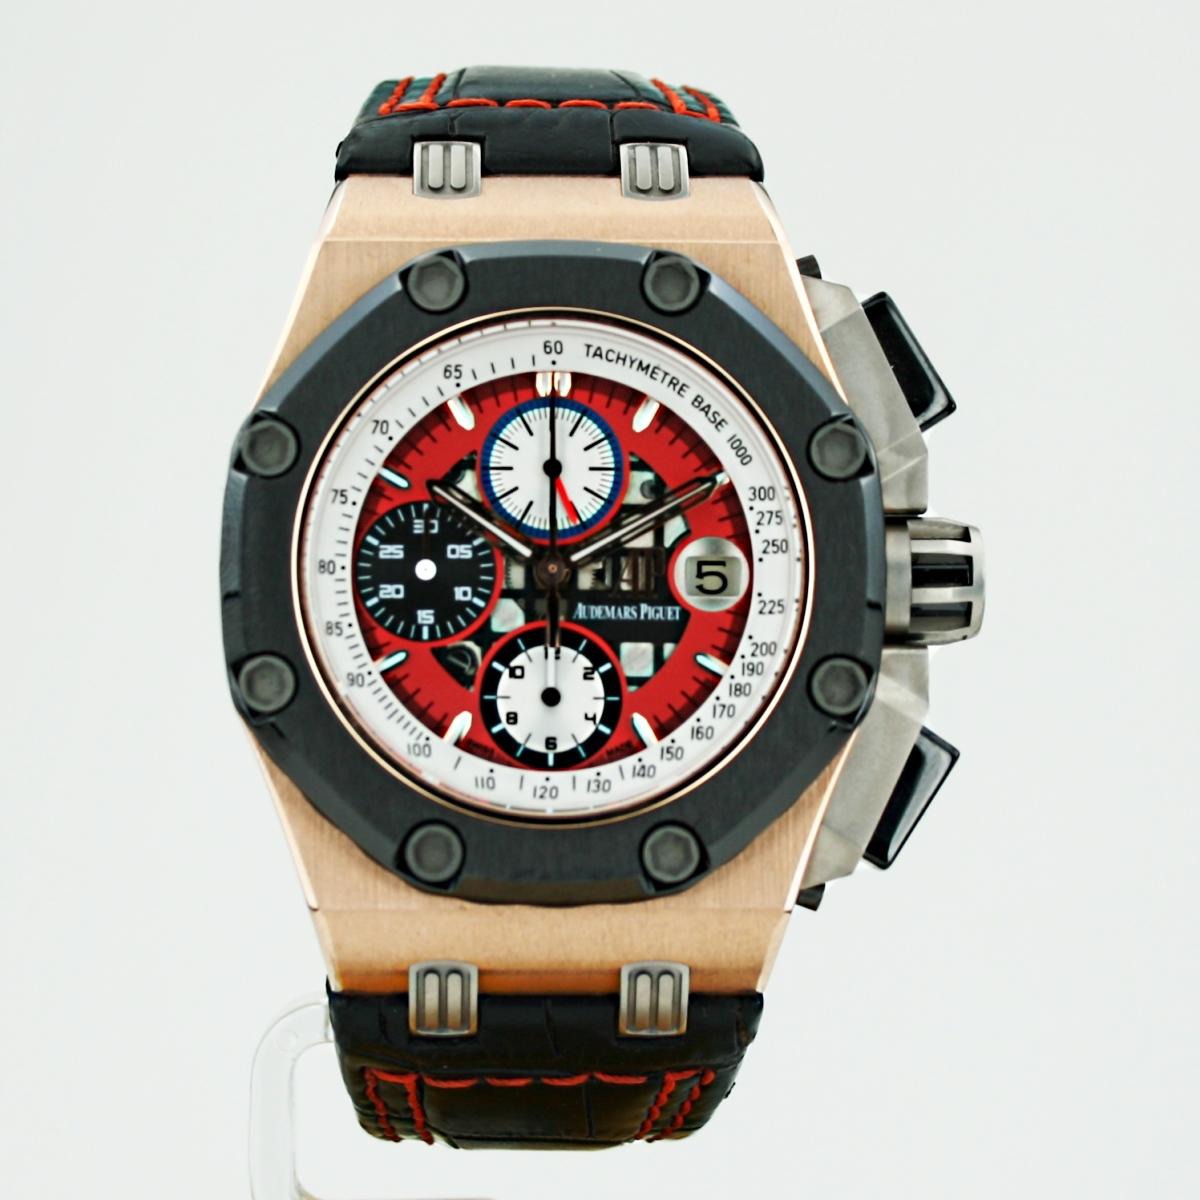 Audemars Piguet Royal Oak Offshore Rubens Barrichello III Rose Gold watch REF: 26284RO.OO.D002CR.01